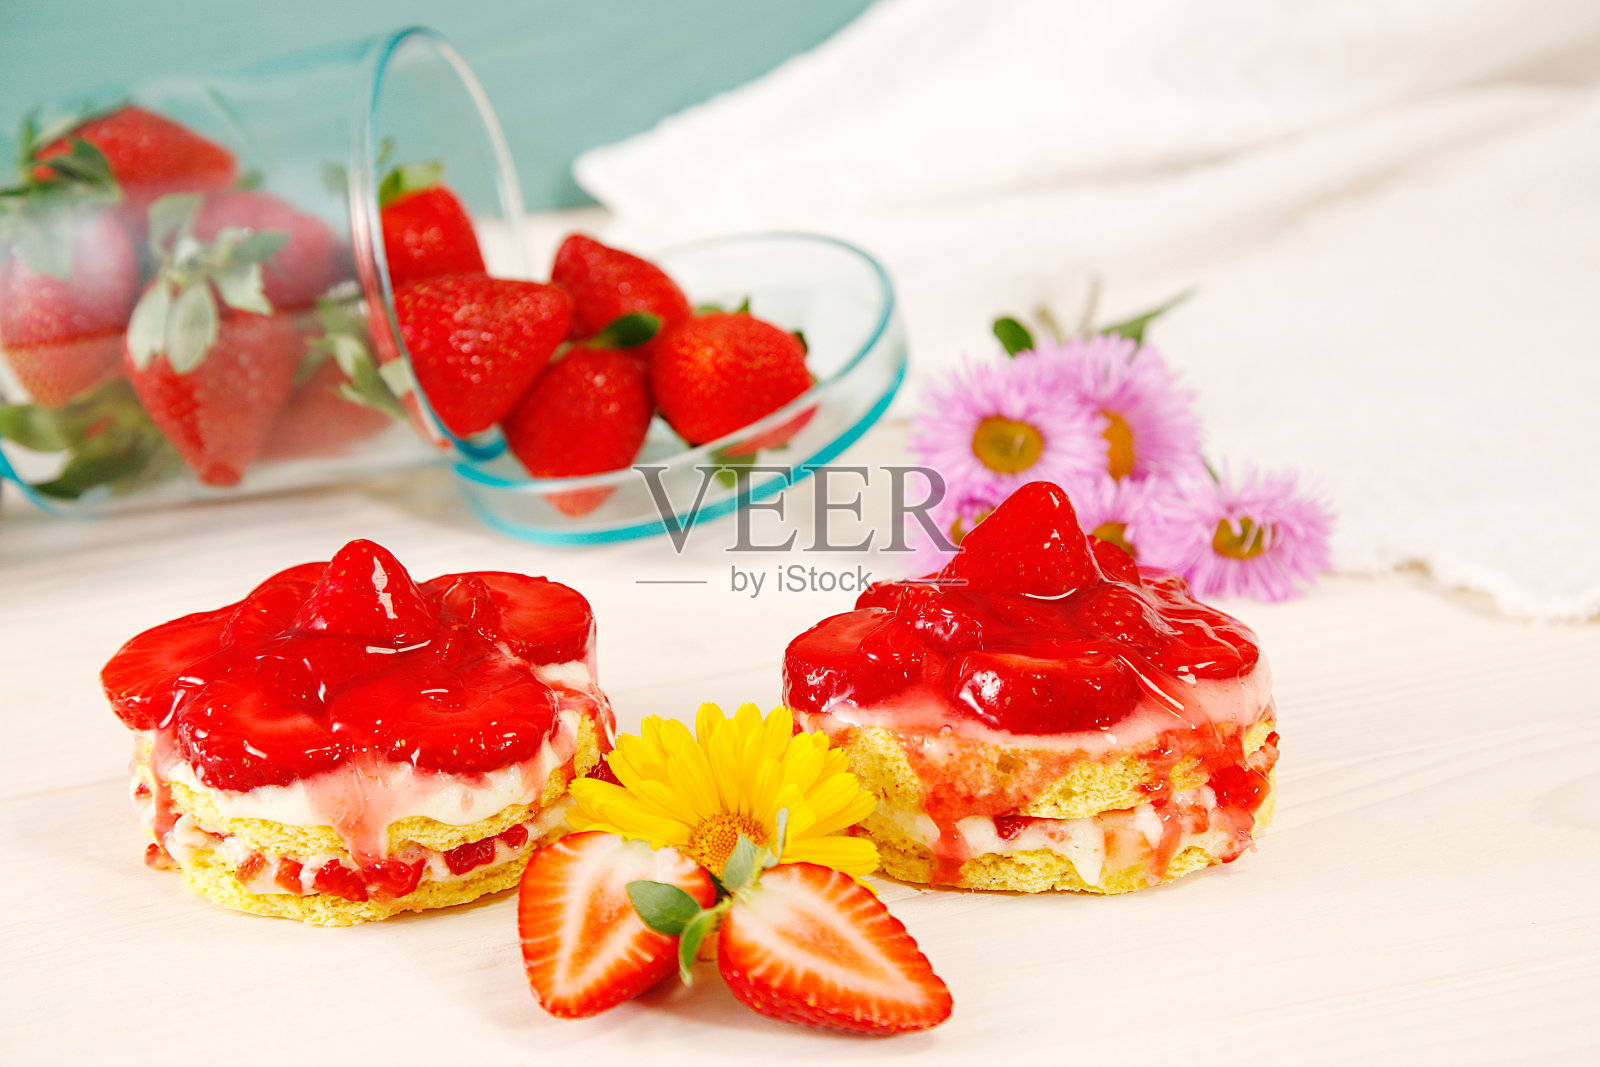 草莓海绵蛋糕。自制美味迷你草莓酸奶奶油海绵蛋糕。两个精致可口的奶油草莓饼干蛋糕。照片摄影图片